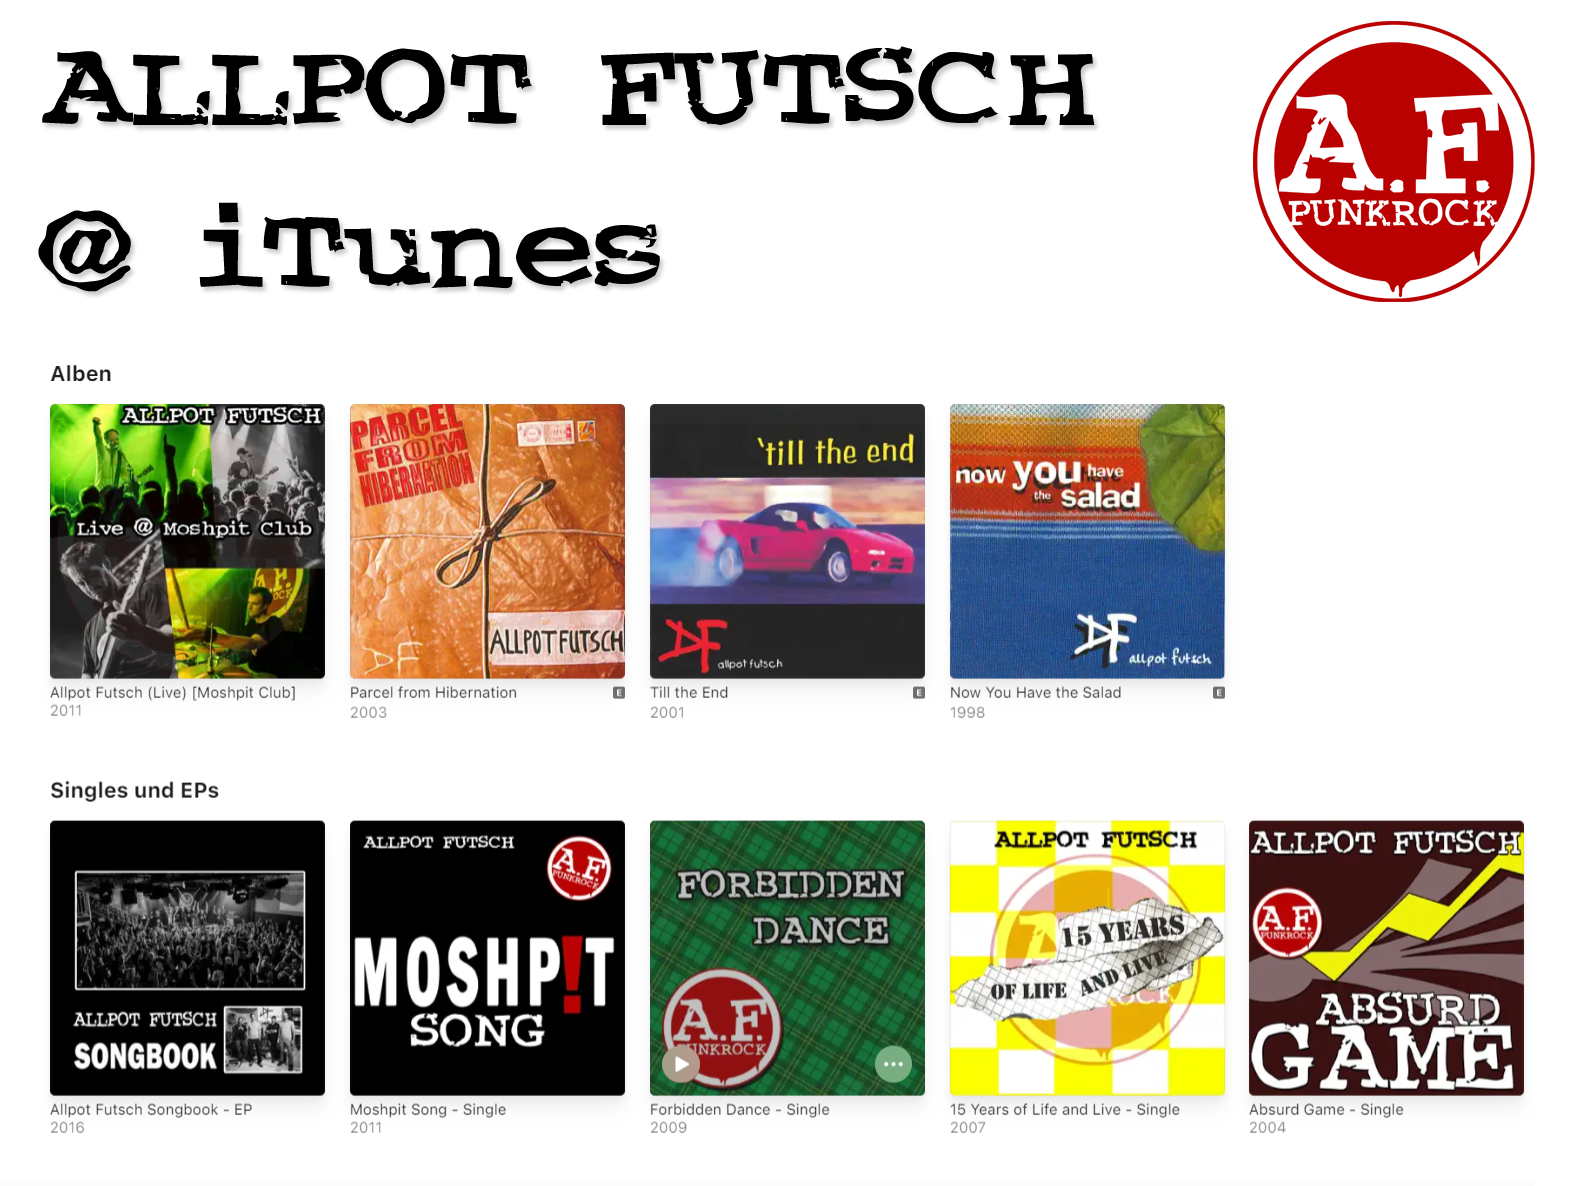 Allpot Futsch @ iTunes